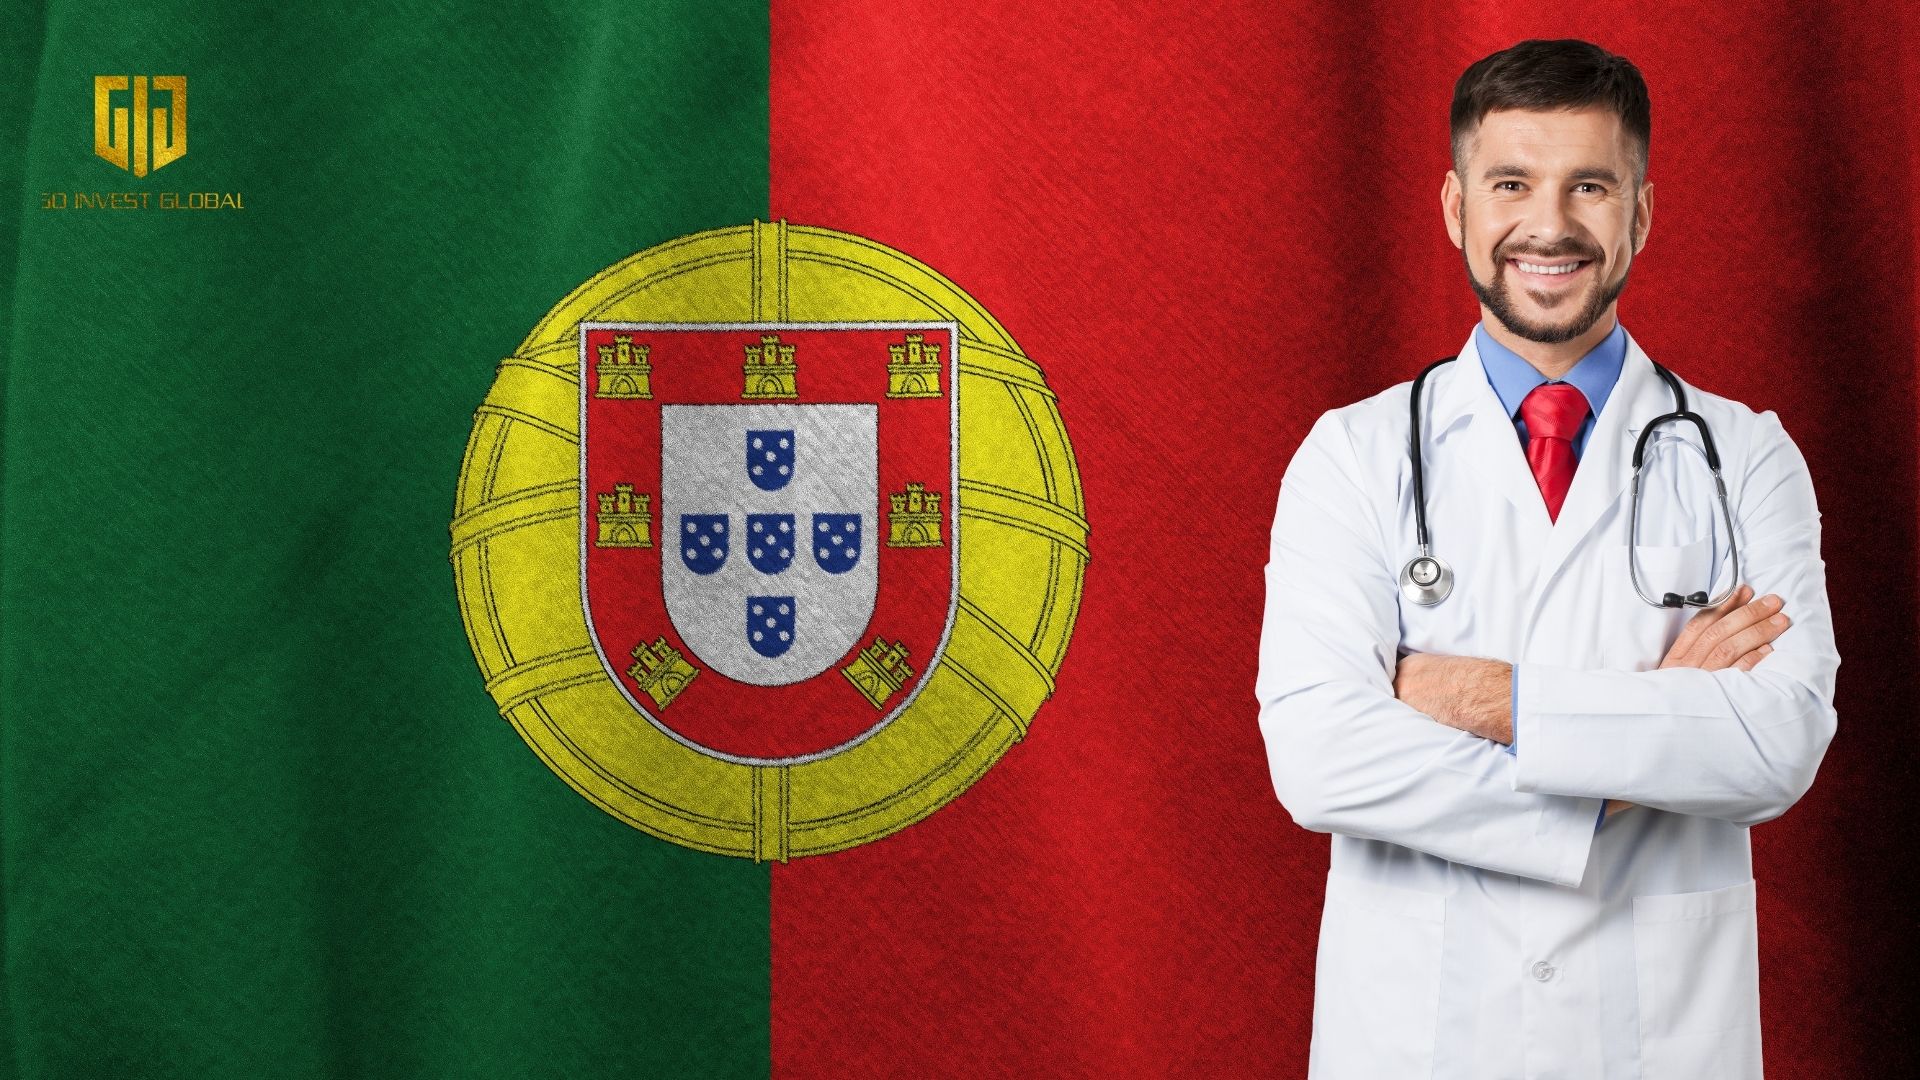 Định Cư Bồ Đào Nha - Tư Vấn Đầu Tư Định Cư Bồ Đào Nha